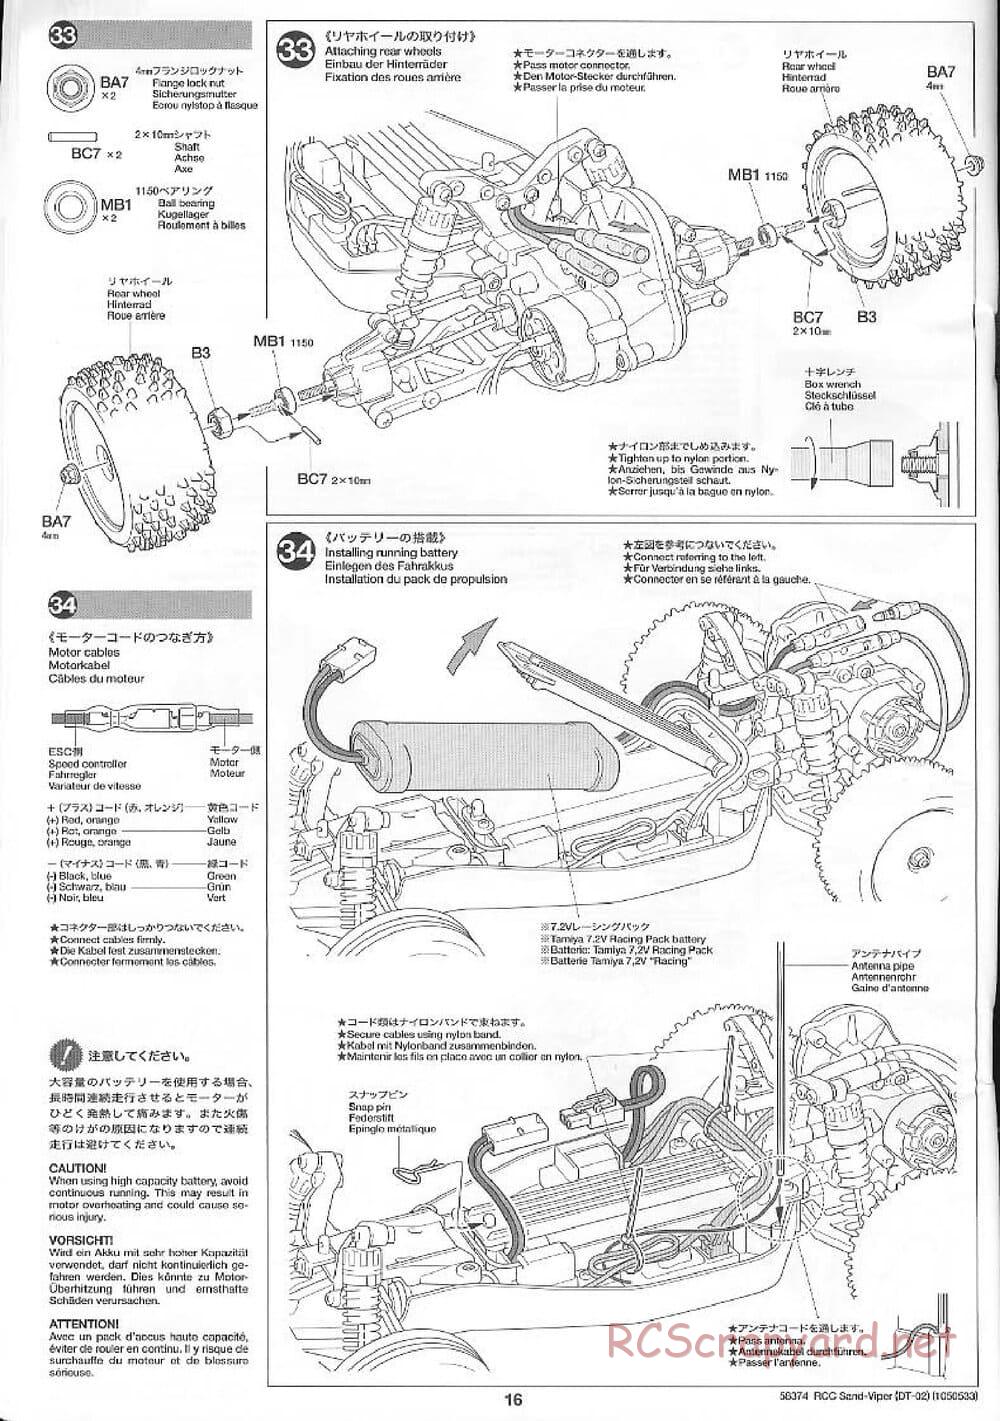 Tamiya - Sand Viper Chassis - Manual - Page 16